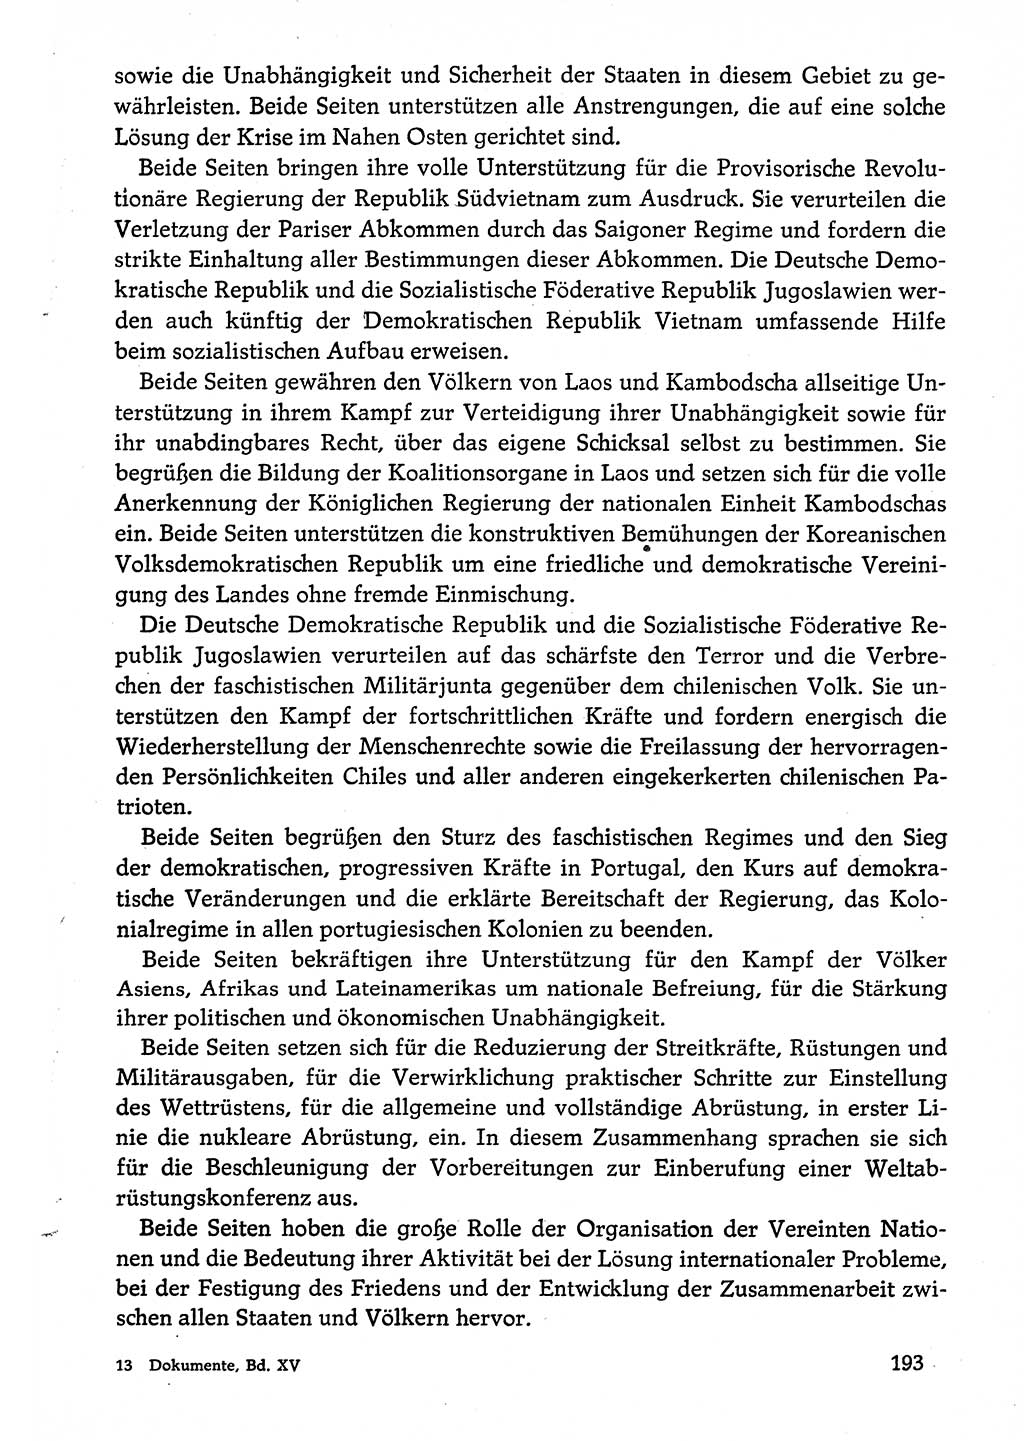 Dokumente der Sozialistischen Einheitspartei Deutschlands (SED) [Deutsche Demokratische Republik (DDR)] 1974-1975, Seite 193 (Dok. SED DDR 1978, Bd. ⅩⅤ, S. 193)